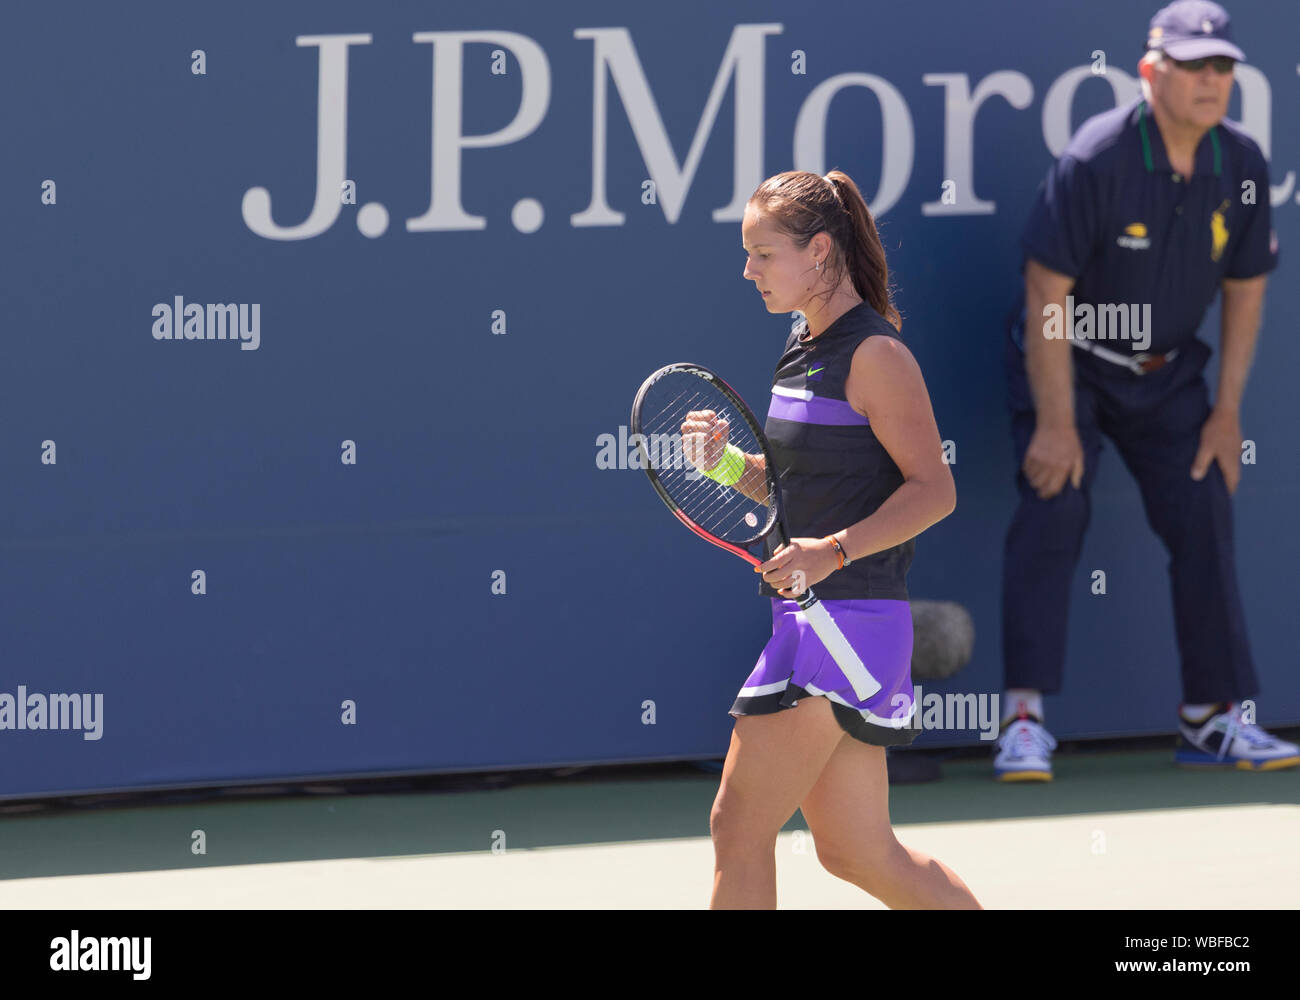 New York, NY - 26 août 2019 : Daria Kasatkina (Russie) réagit lors de la ronde 1 de l'US Open Tennis Championship contre Johanna Konta (Grande-Bretagne) à Billie Jean King National Tennis Center Banque D'Images